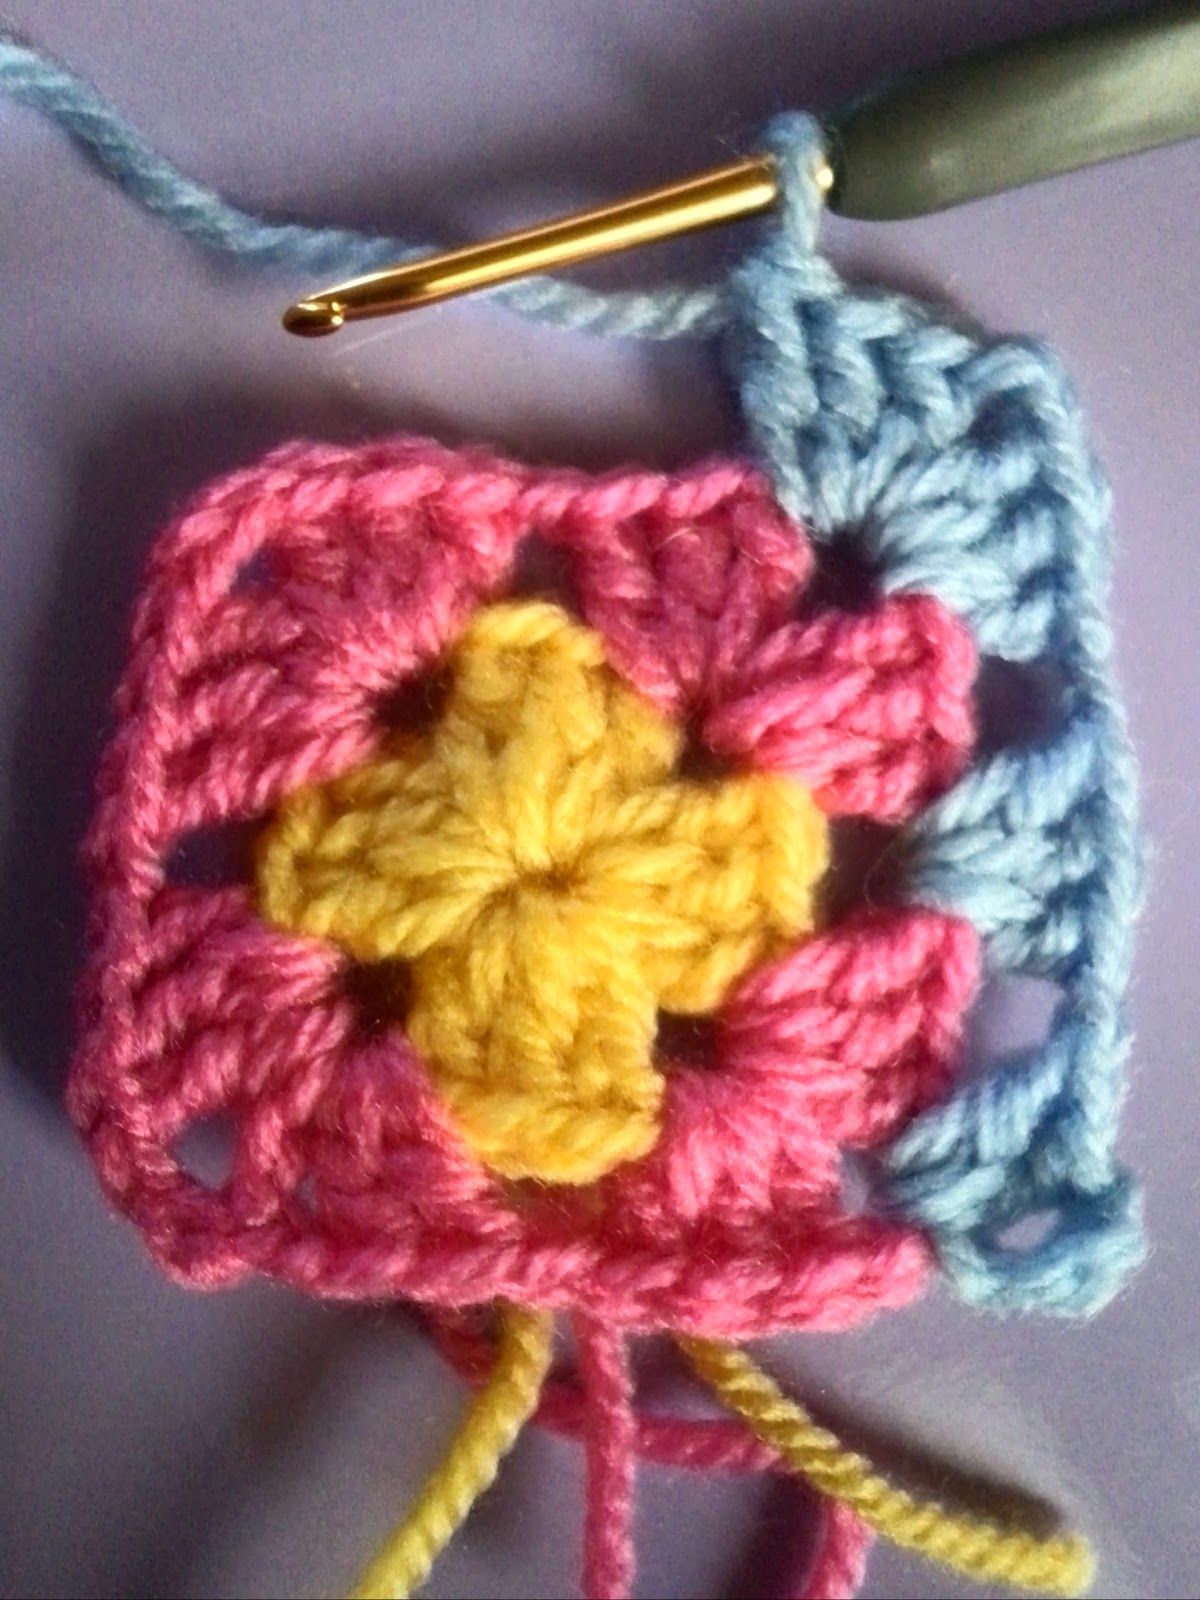 グラニースクエア 基本の四角モチーフ の編み方と編み図 Crochet And Me かぎ針編みの編み図と編み方